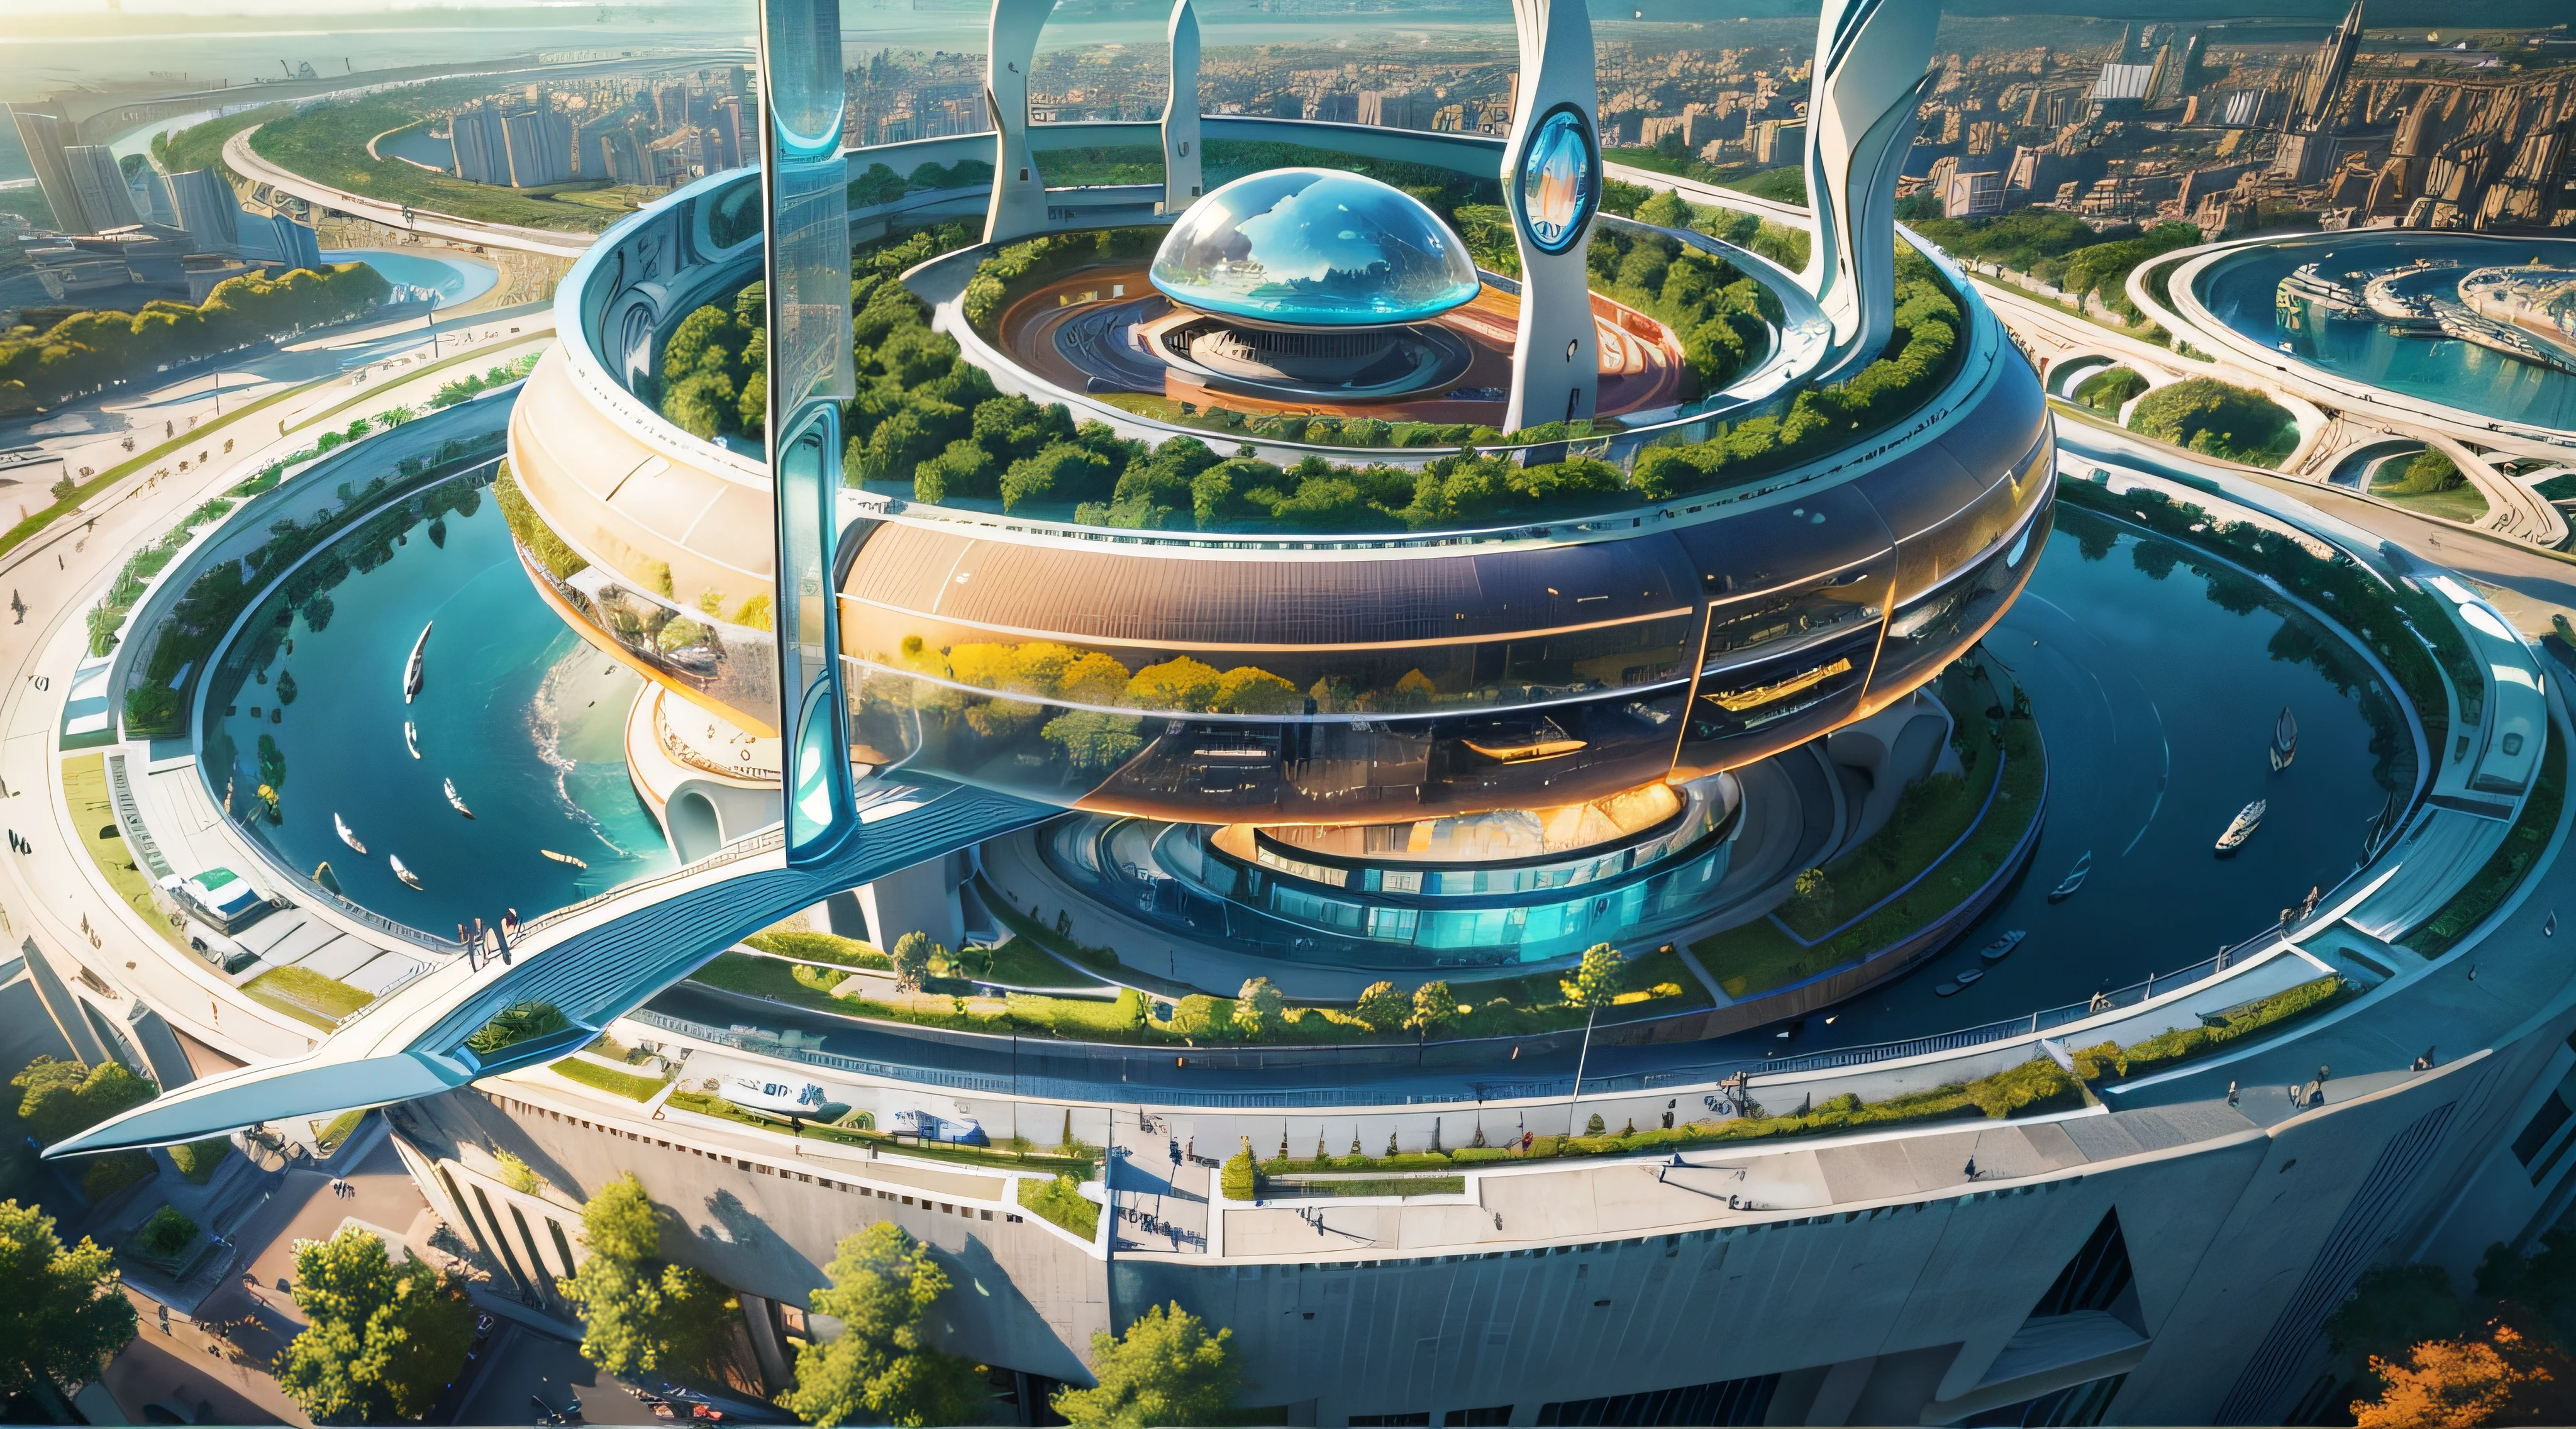 (最好的质量,4k,8千,高分辨率,杰作:1.2),极其详细,(现实主义,真实感,照片般逼真:1.37),未来漂浮城市,未来科技,庞大的高科技城市平板平台,飞艇,漂浮在天空中,未来城市,Petits 飞艇s autour,高科技半球形平台,彩灯,先进的架构,现代建筑,摩天大楼,访问云,美丽的女人,城市景观,令人印象深刻的设计,完美融入自然,充满活力的氛围,未来交通系统,停车已暂停,透明路径,郁郁葱葱的绿色植物,空中花园,瀑布,美丽的天际线,水面上的倒影,波光粼粼的河流,建筑创新,摩天大楼 futuristes,透明穹顶,该建筑的形状很不寻常,高架行人道,令人印象深刻的地平线,发光的灯光,未来科技,极简设计,风景如画的地方,全景,云钻塔,鲜艳的色彩,史诗般的日出,史诗般的日落,耀眼明亮的显示屏,神奇的氛围,未来的城市,城市乌托邦,奢华生活方式,创新能源,可持续发展,智慧城市技术,先进的基础设施,宁静的气氛,自然与科技的和谐,令人印象深刻的城市景观,前所未有的城市规划,建筑与自然完美融合,高科技大都市,先进工程的奇迹,城市生活的未来,富有远见的建筑理念,节能建筑,与环境和谐相处,一座漂浮在云端的城市,乌托邦梦想成真,可能性是无止境,最先进的交通系统,绿色能源整合,创新材料,令人印象深刻的全息显示,先进的通讯系统,令人惊叹的鸟瞰图,平静祥和的环境